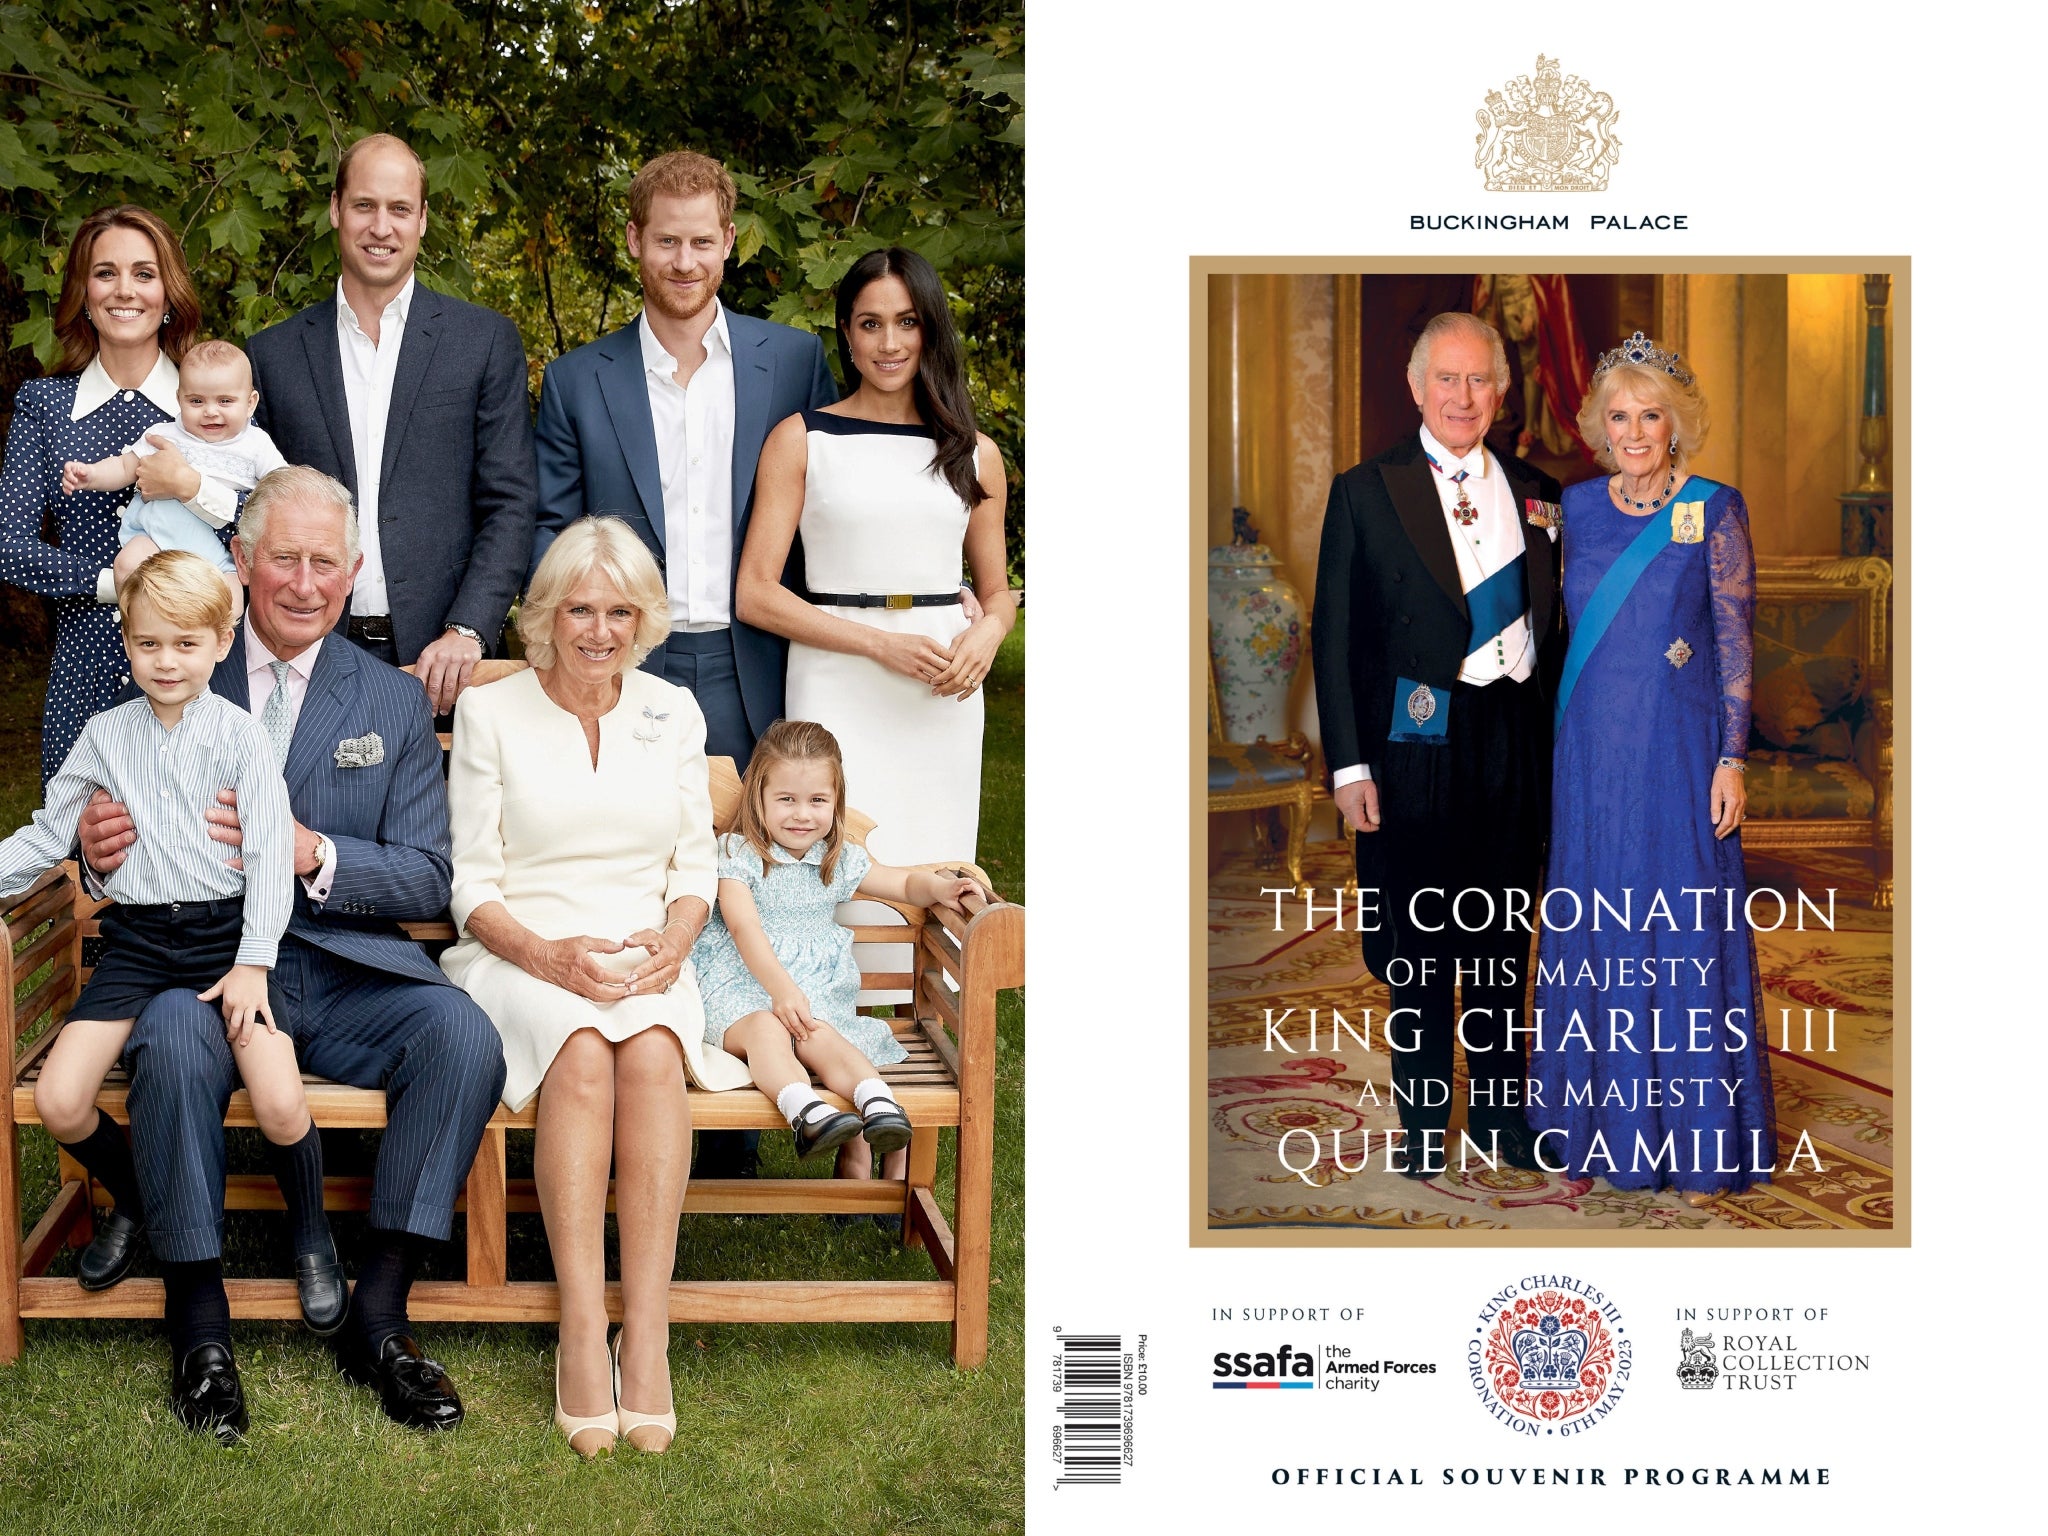 Un retrato de 2018 de Carlos y Camila (antes príncipe de Gales y duquesa de Cornualles); el príncipe William y Kate (antes duques de Cambridge); y el príncipe Harry y Meghan (duques de Sussex) figura en el programa oficial de suvenires de la coronación